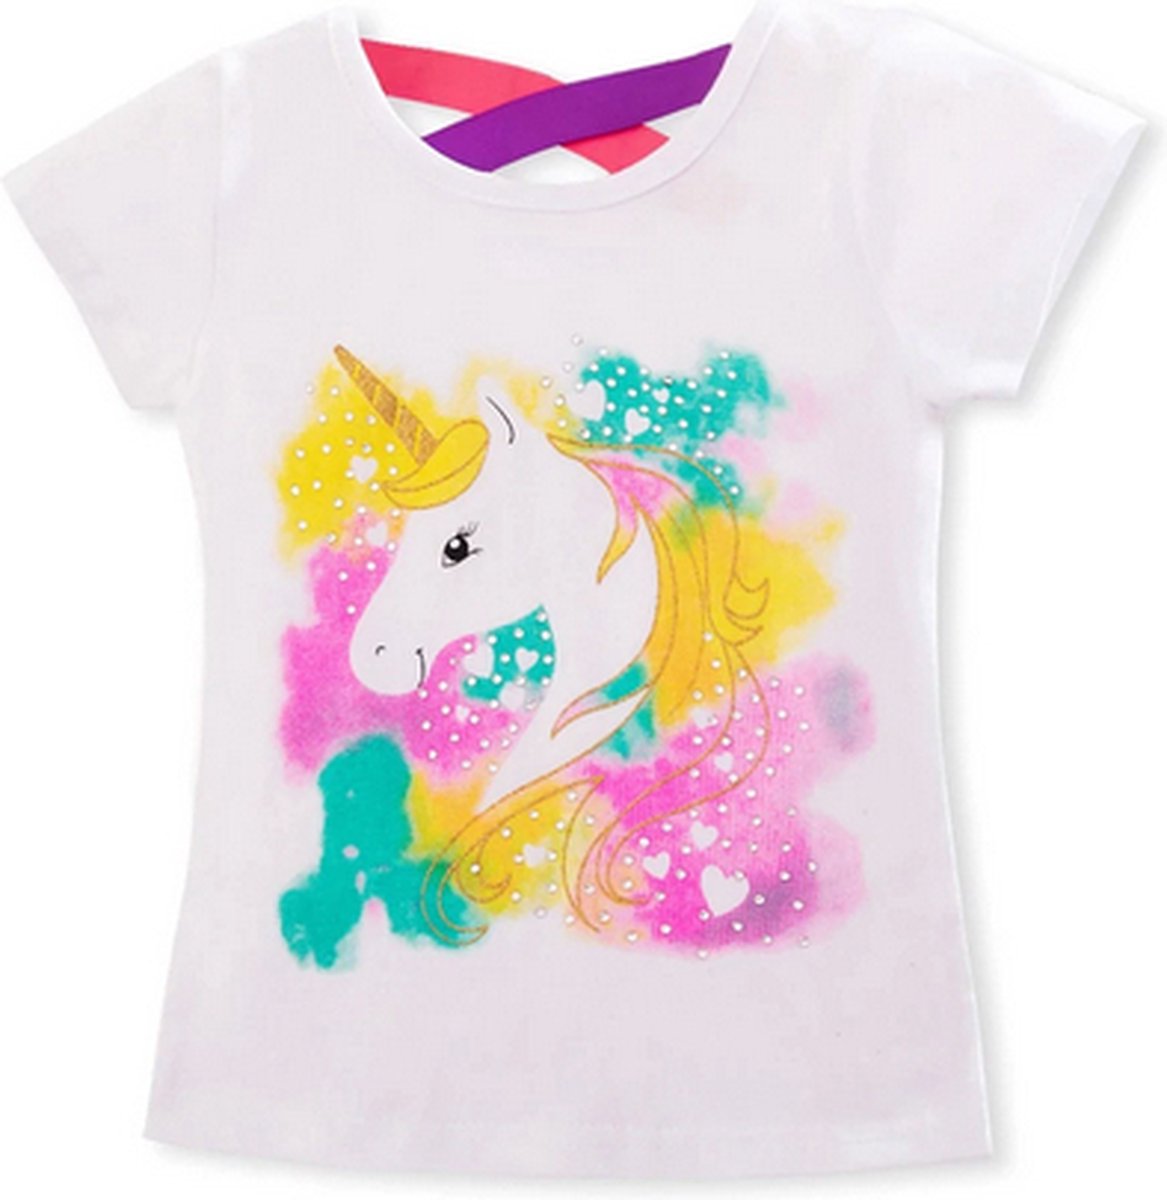 Eenhoorn tshirt meisje - gekleurd eenhoorn shirt - Unicorn T-shirt coloured - maat 122/128 / XL - meisjes eenhoorn shirt 6 - 7 jaar